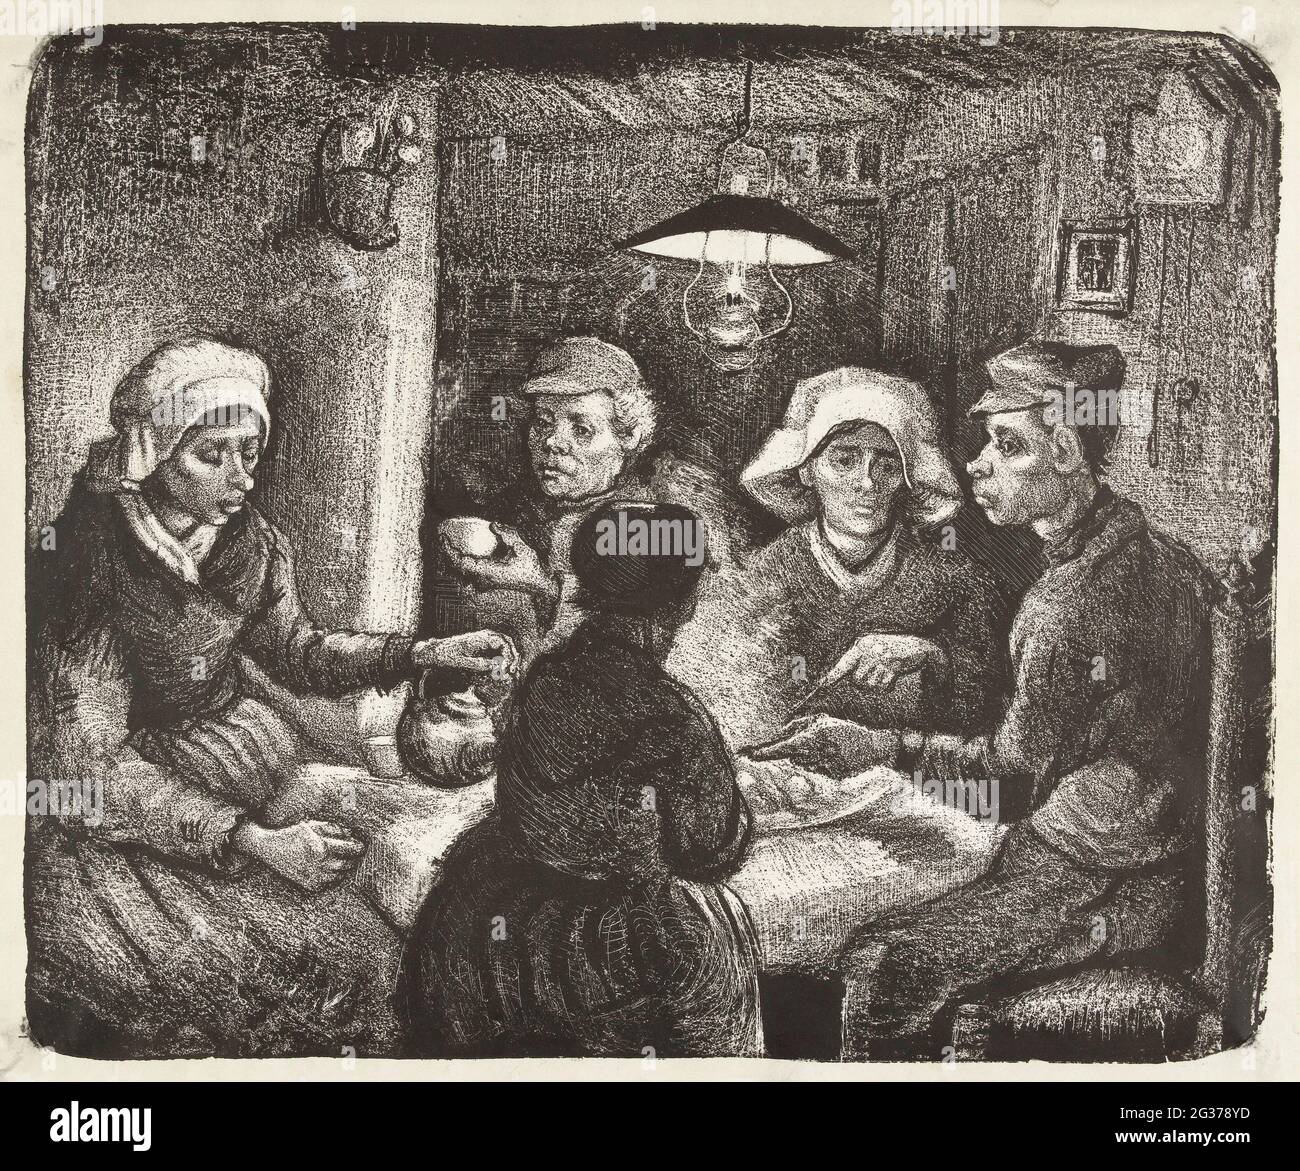 Litografía de composición de los comedores de patata (De aardappeleters,  1885) de Vincent Van Gogh. Original del Rijksmuseum Fotografía de stock -  Alamy